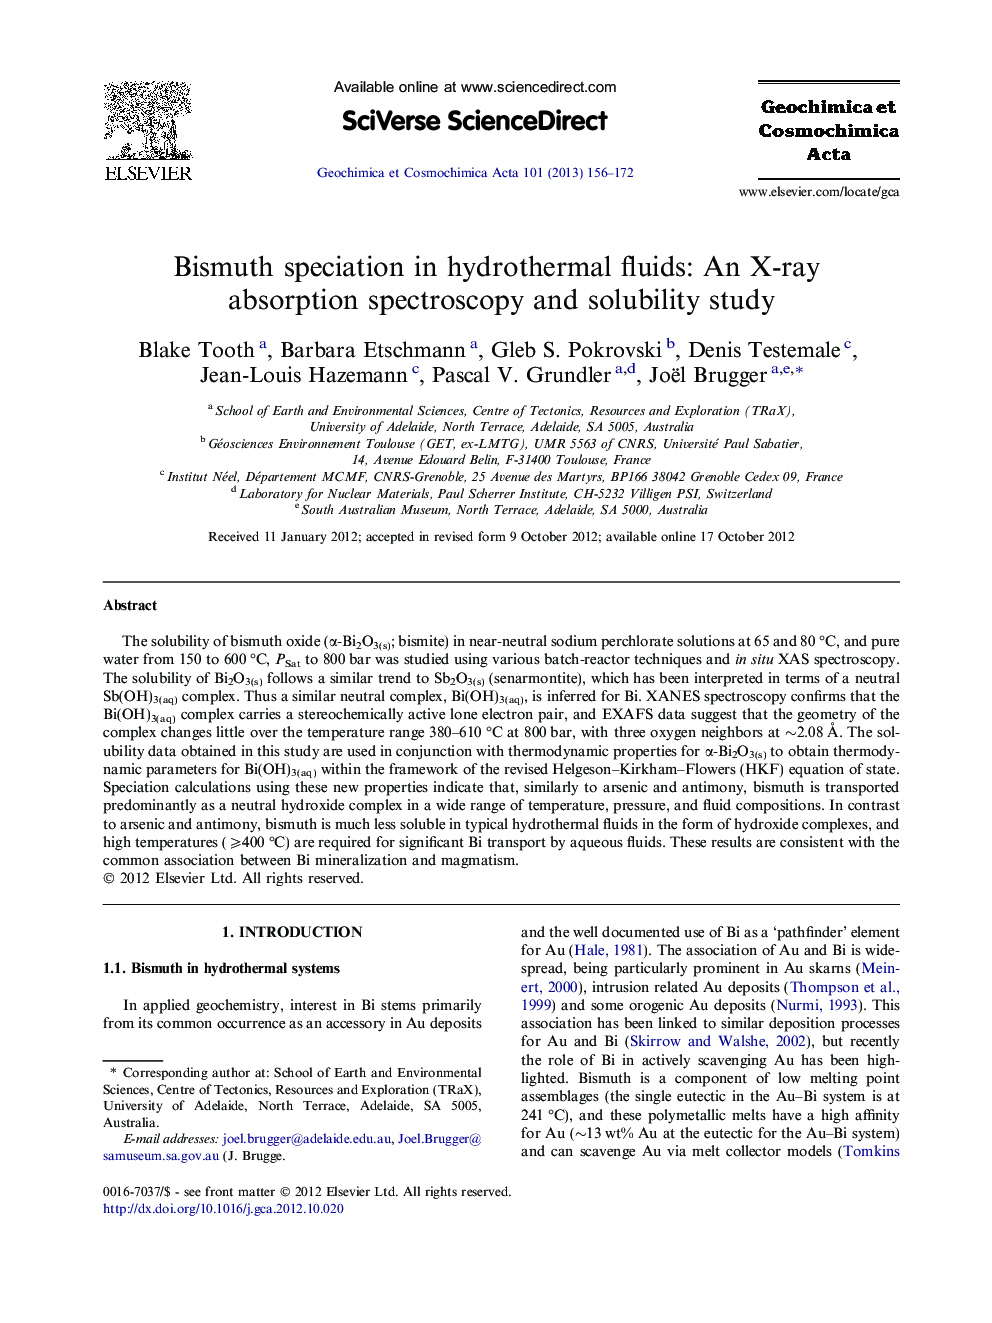 اختصاصی بیسموت در مایعات هیدروترمال: طیف سنجی جذب اشعه ایکس و مطالعه حلالیت 